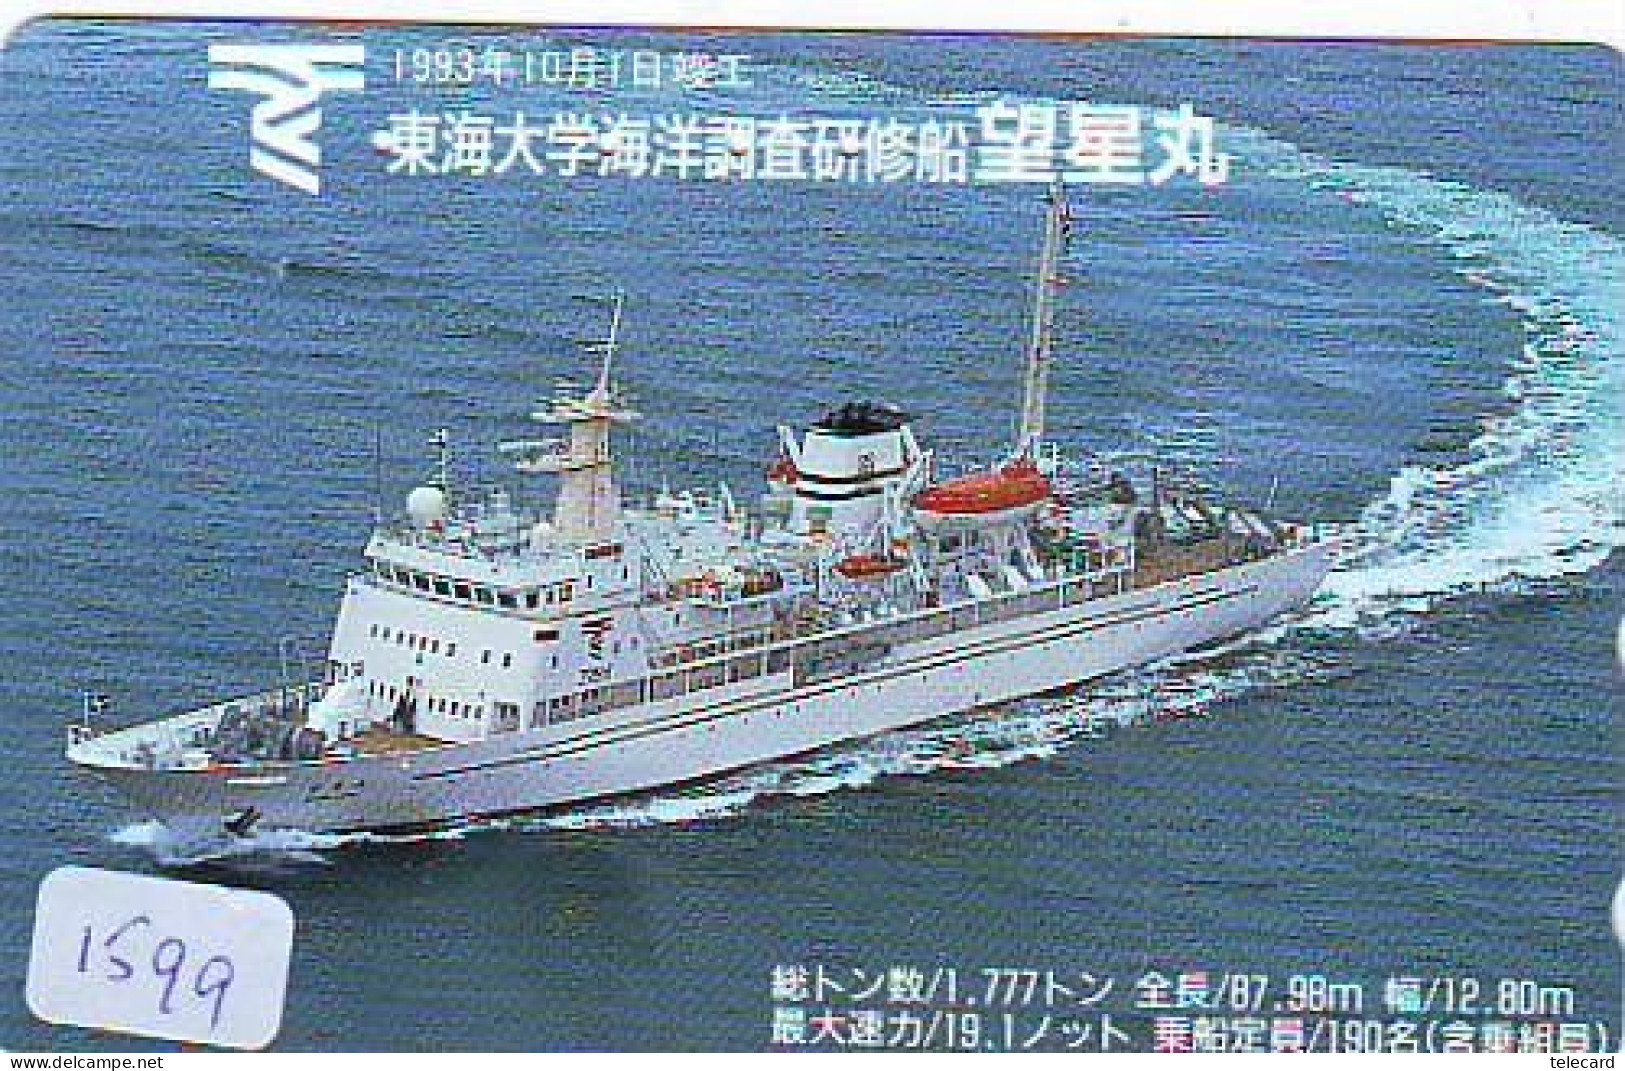 タミヤ社製造 1/300 東海大学海洋調査研修船 望星丸 - 模型、プラモデル